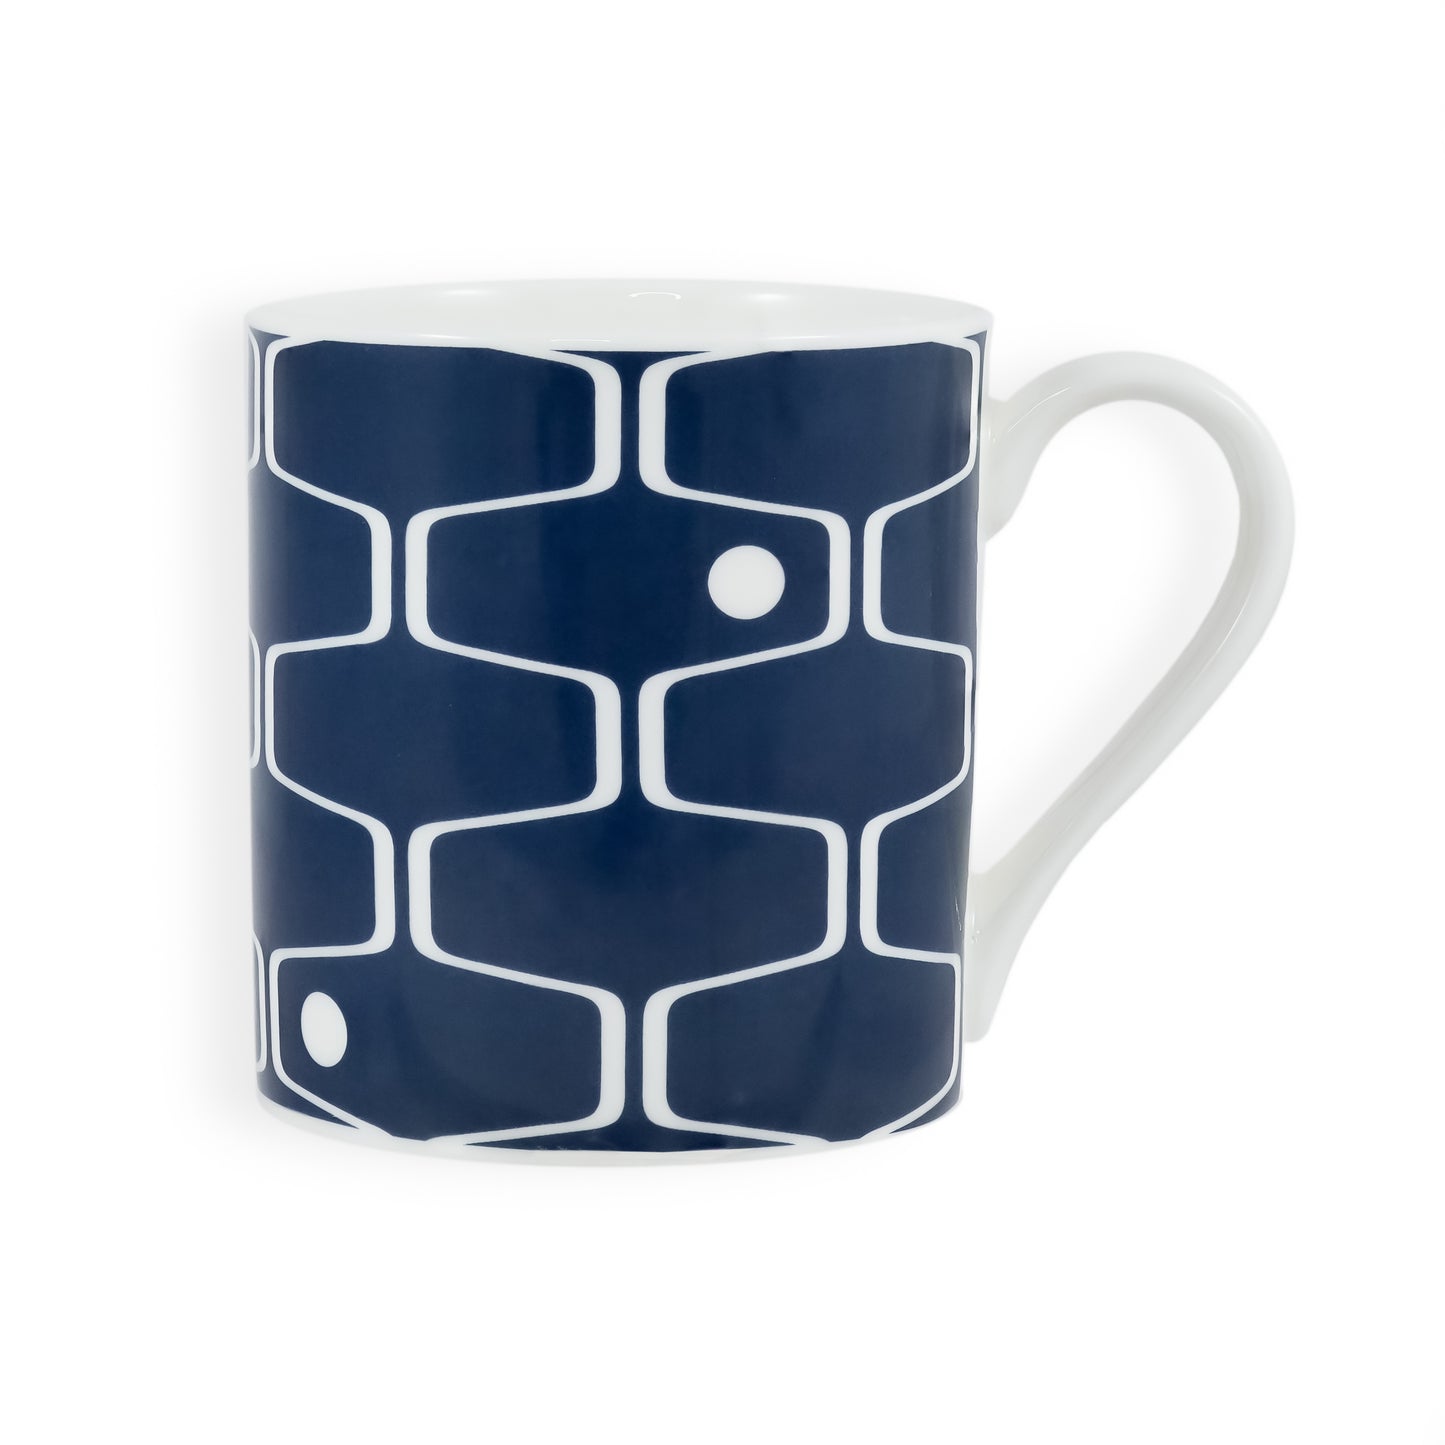 A denim blue mug featuring the net & ball pattern